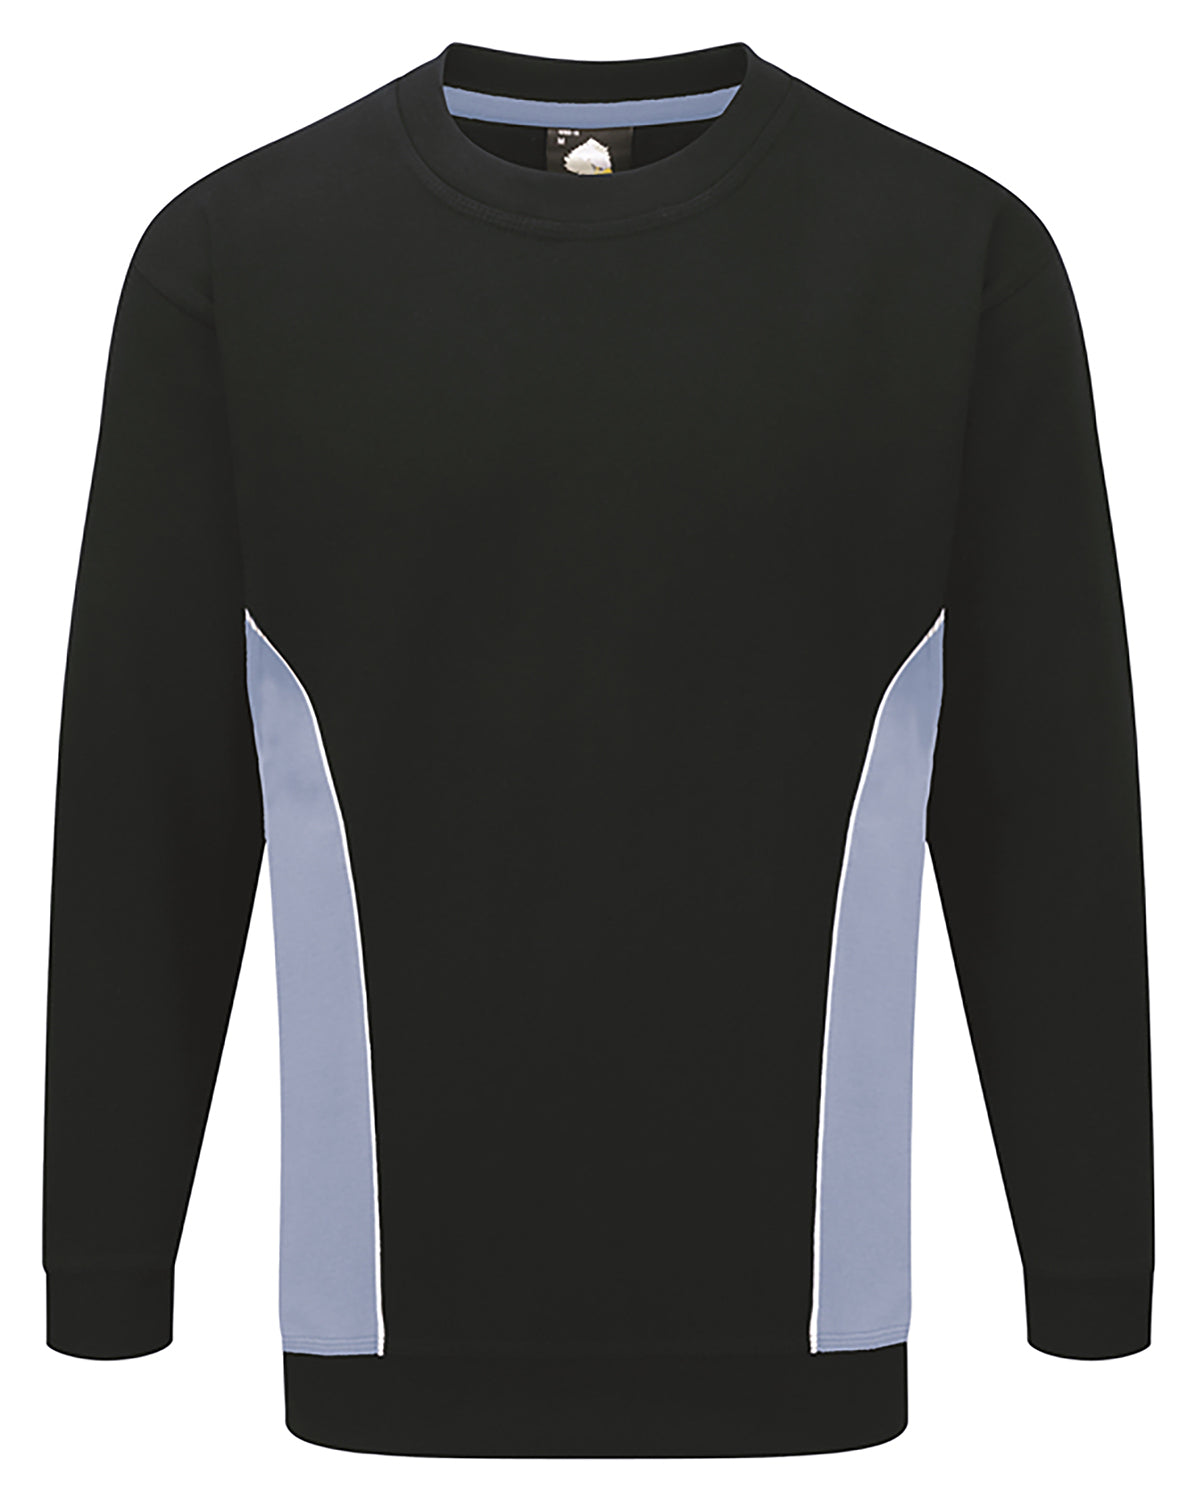 ORN Silverswift Two Tone Workwear Sweatshirt - Navy/Sky Blue